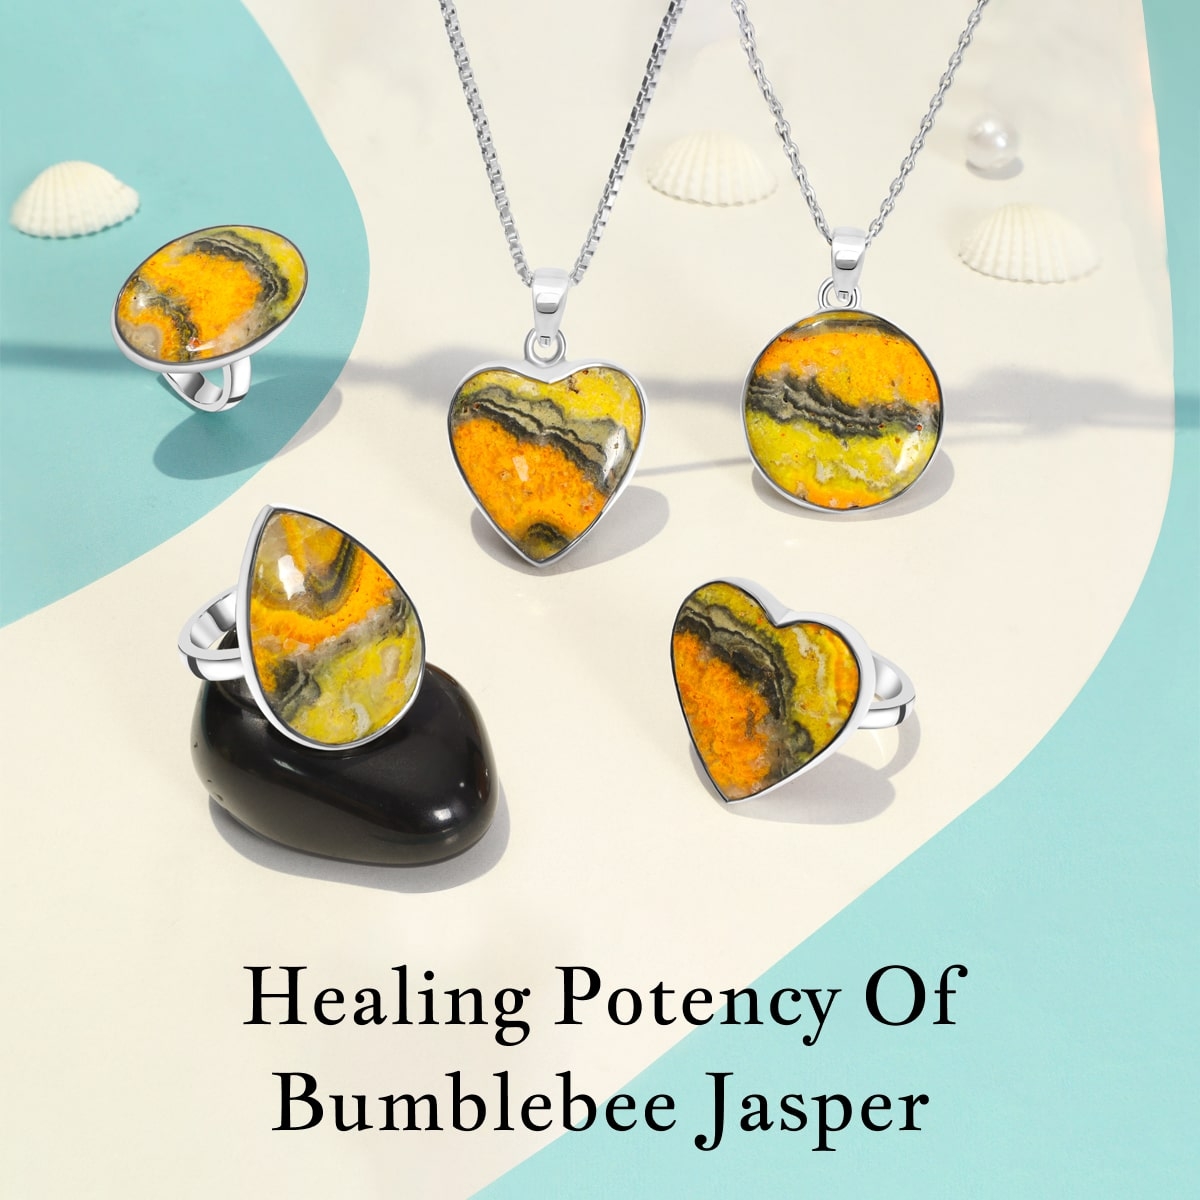 Bumblebee Jasper Healing Properties and Benefits